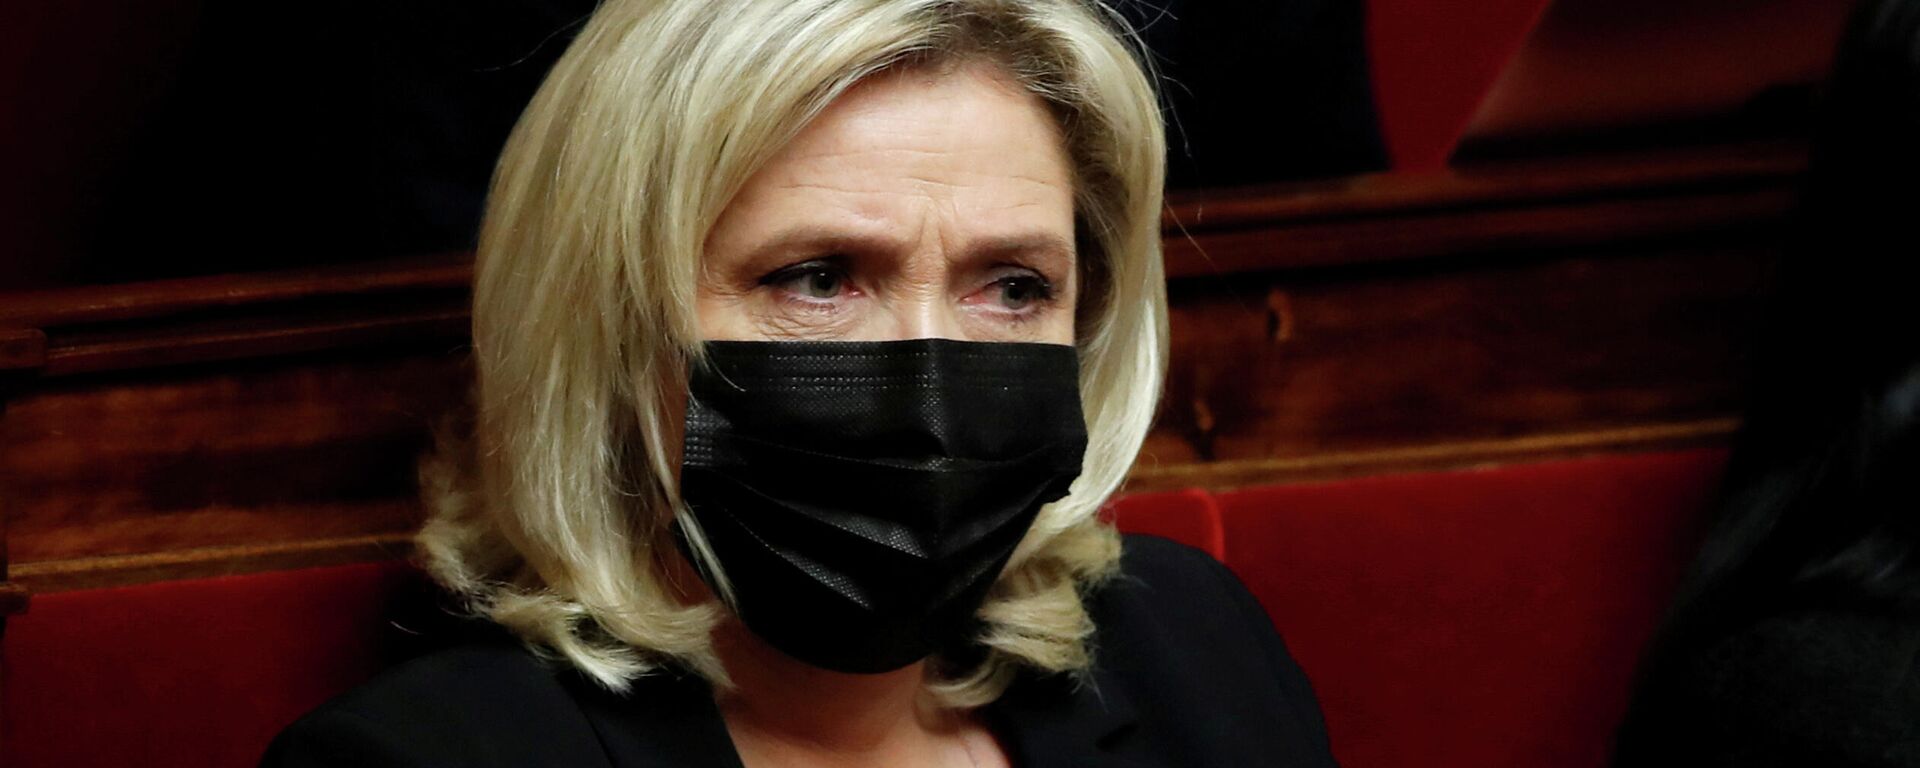 Marine Le Pen, líder del partido francés de derecha Agrupación Nacional - Sputnik Mundo, 1920, 22.03.2021